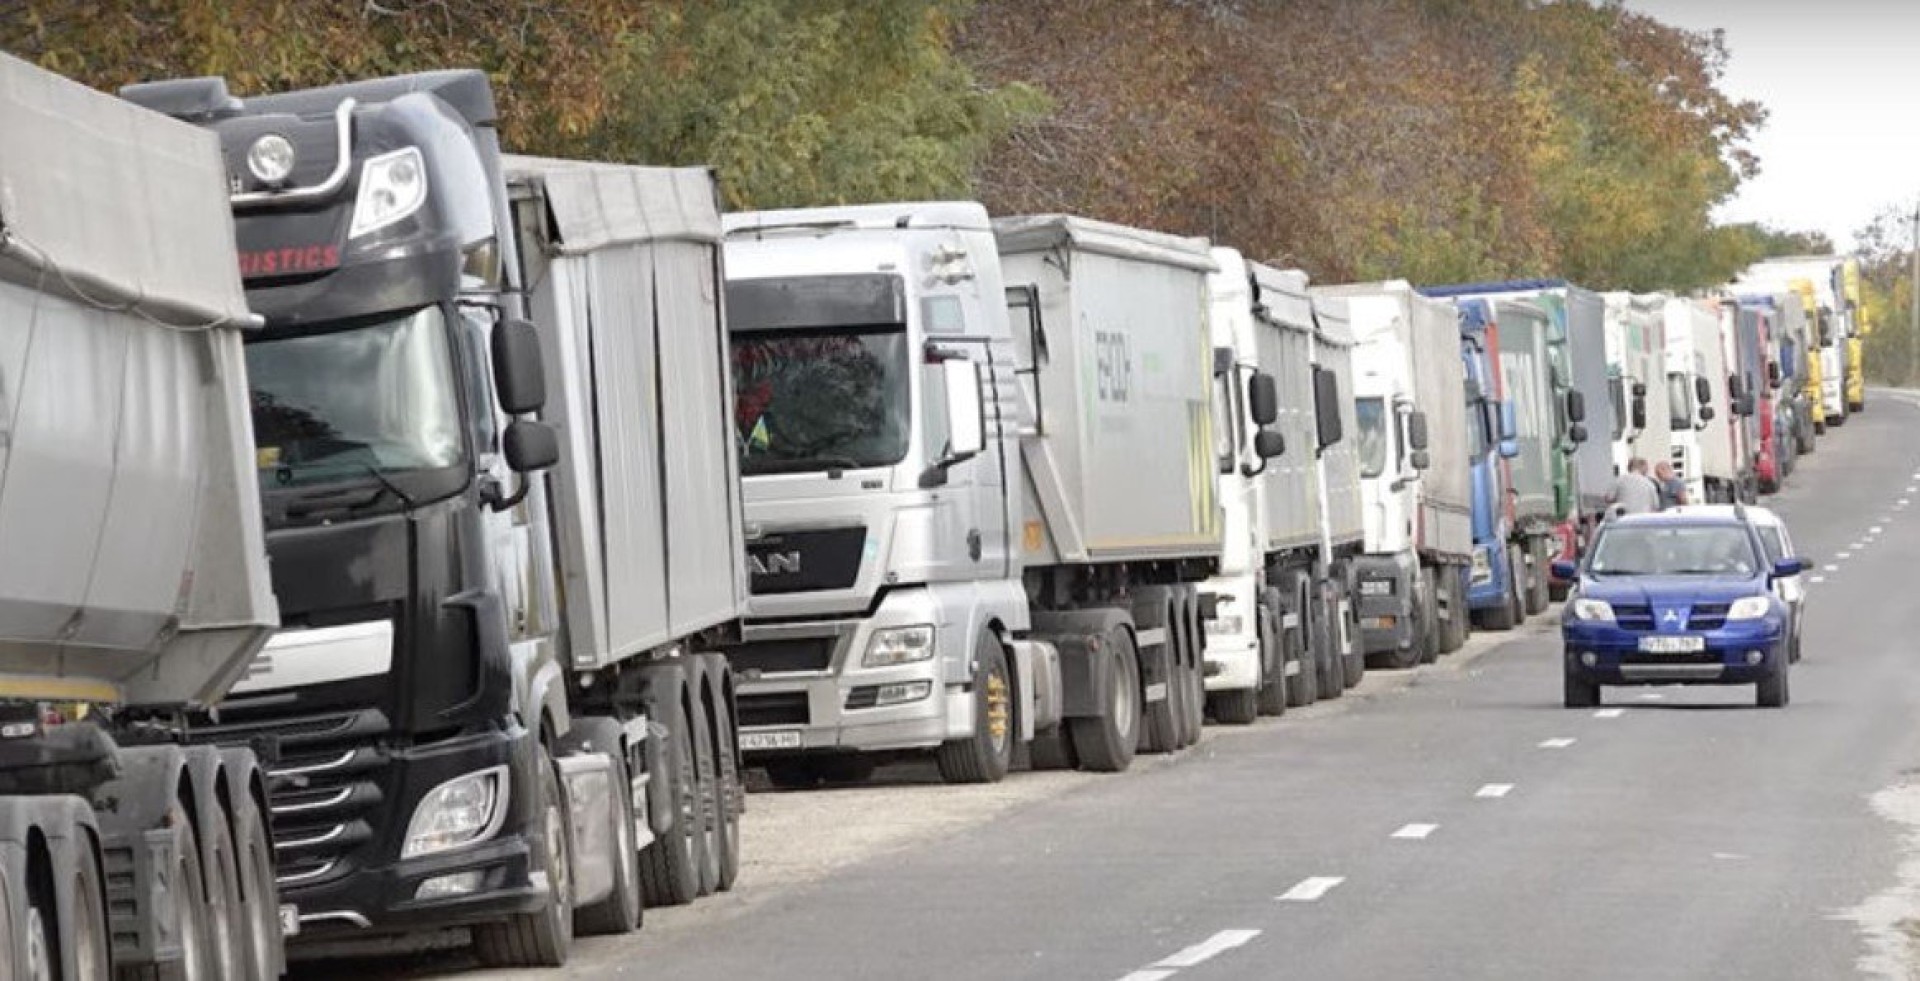 Parlamentul European insistă: Vânzările de camioane pe Diesel, interzise aproape total din 2040